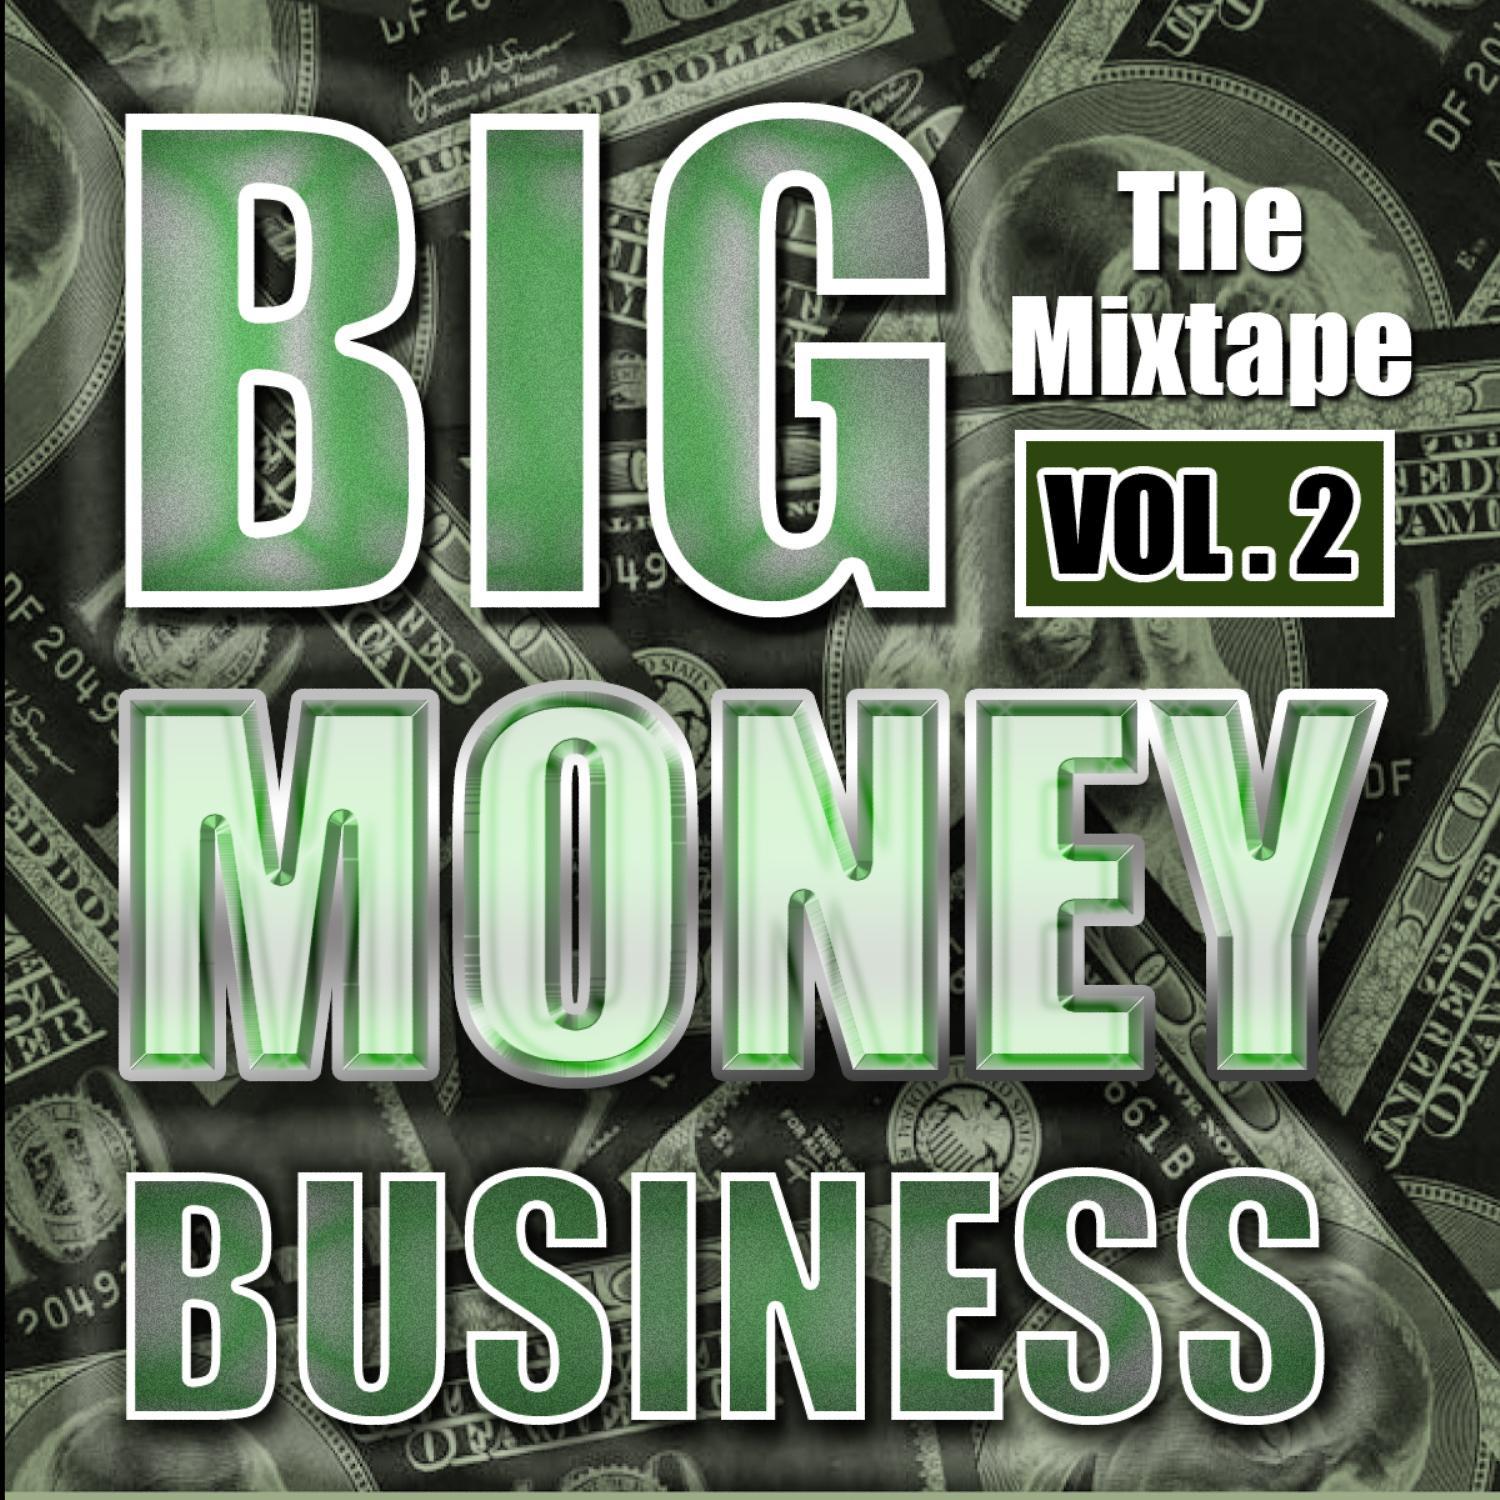 Big Money Vol.2